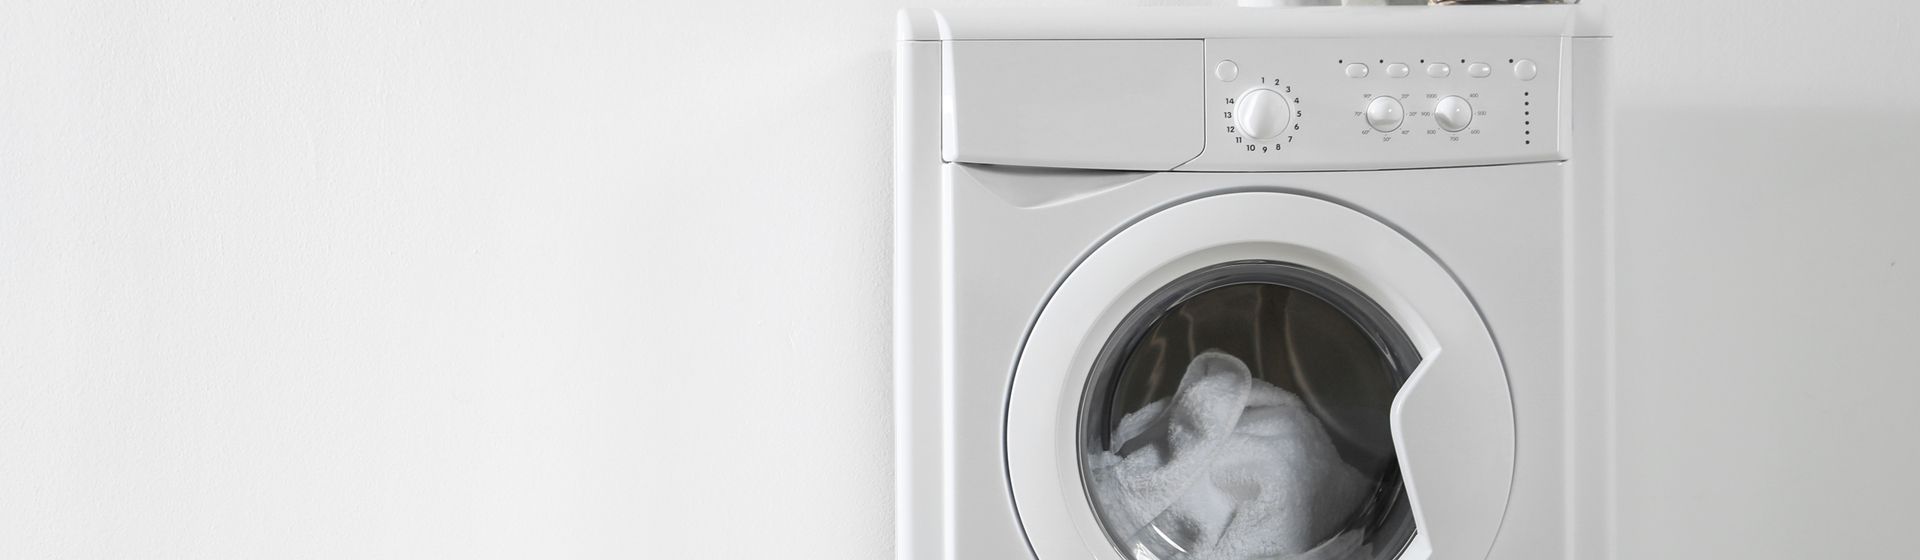 Melhor máquina de lavar roupa barata em 2021